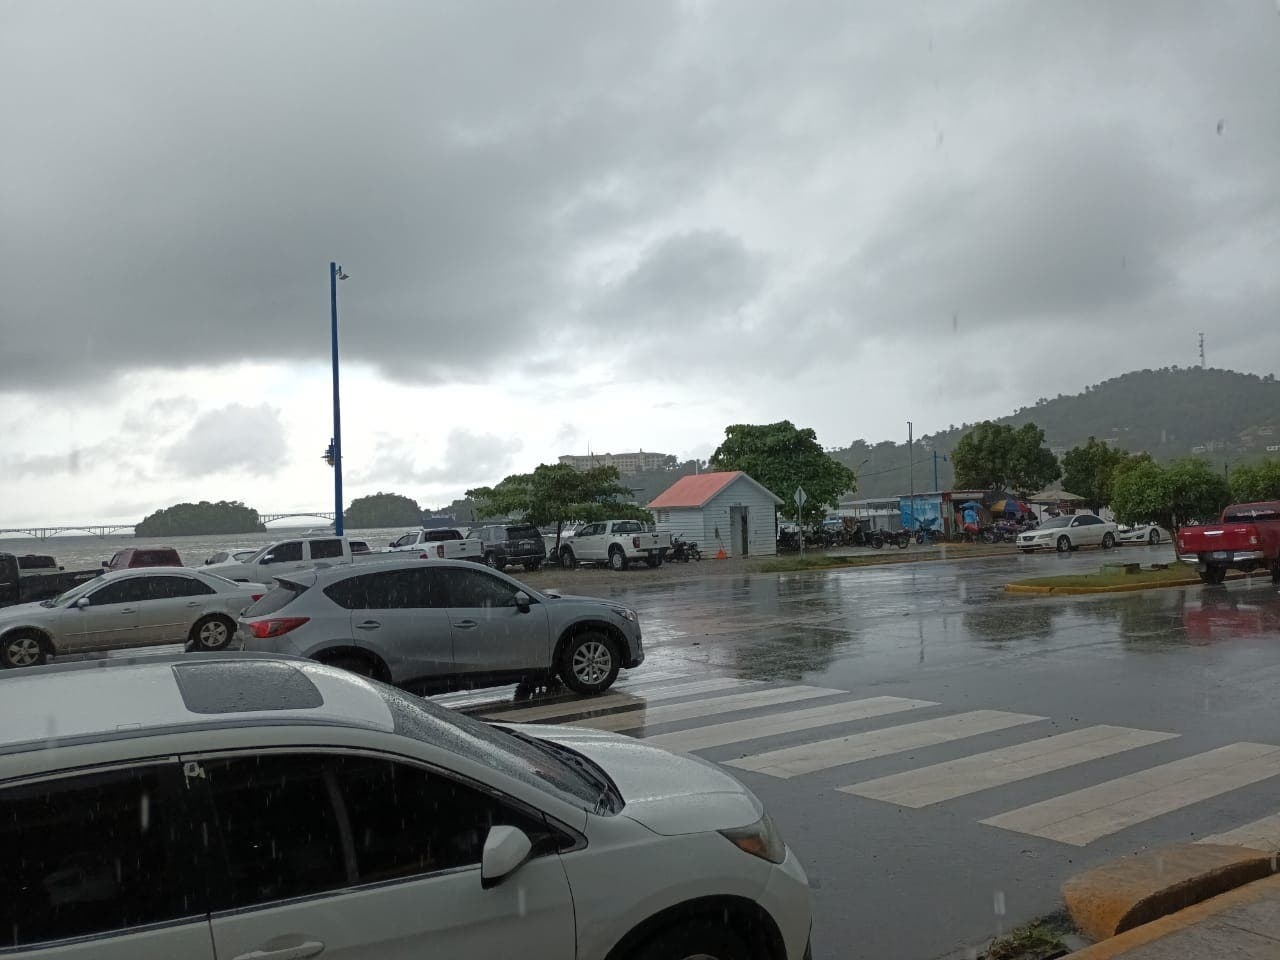 Lluvias débiles hacia algunas provincias del interior, informa Meteorología